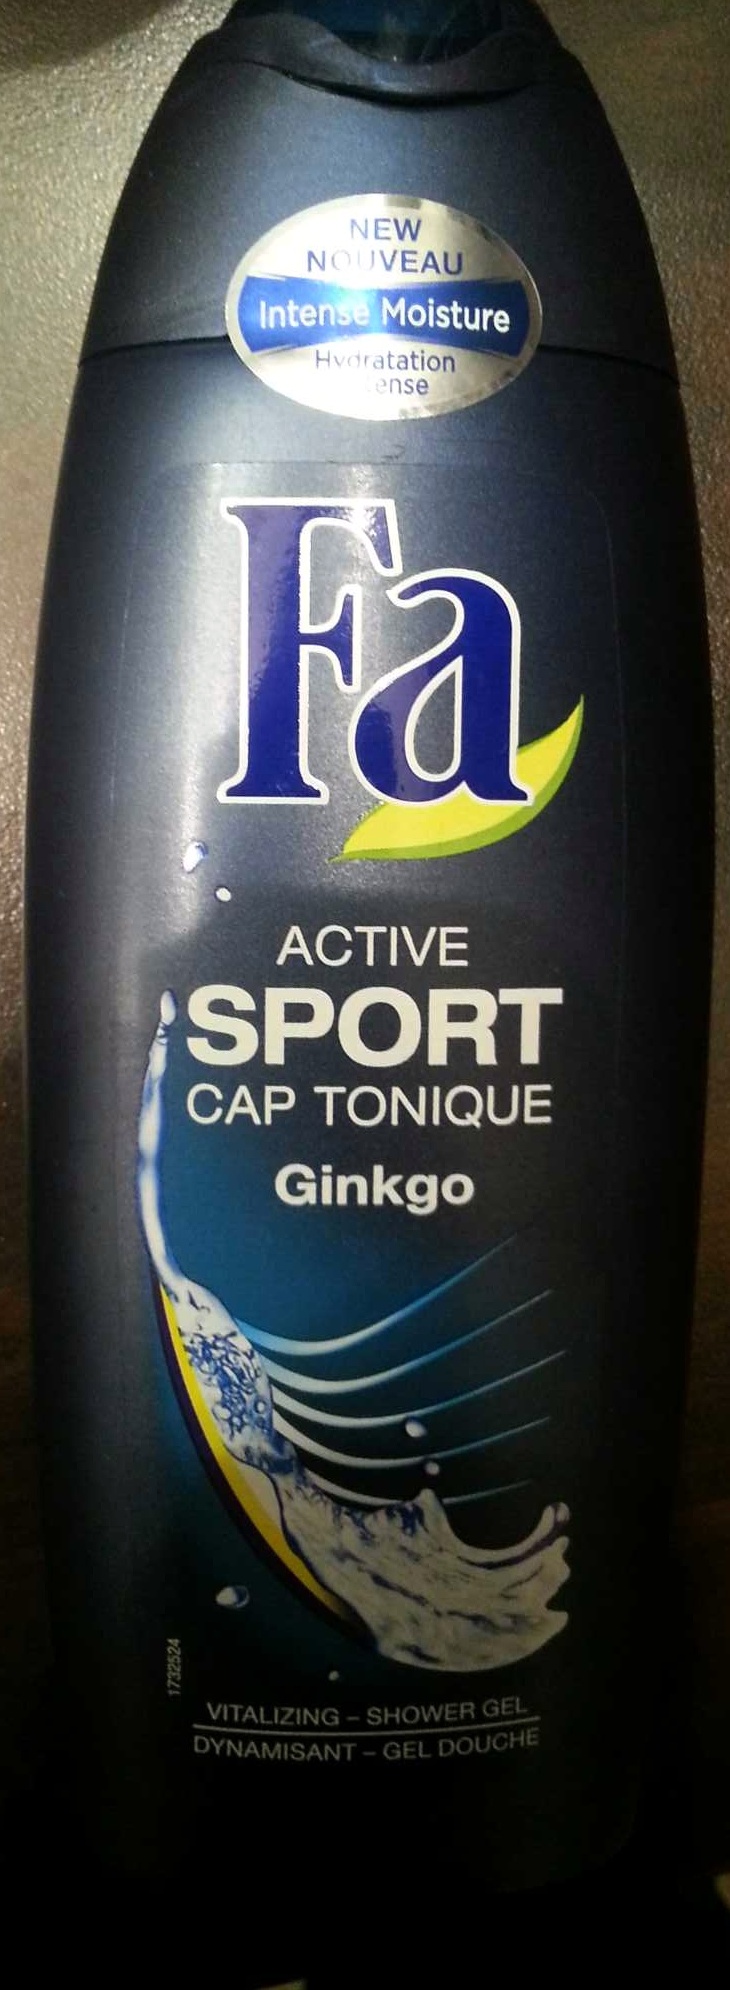 Active sport cap tonique Ginkgo - Produto - fr